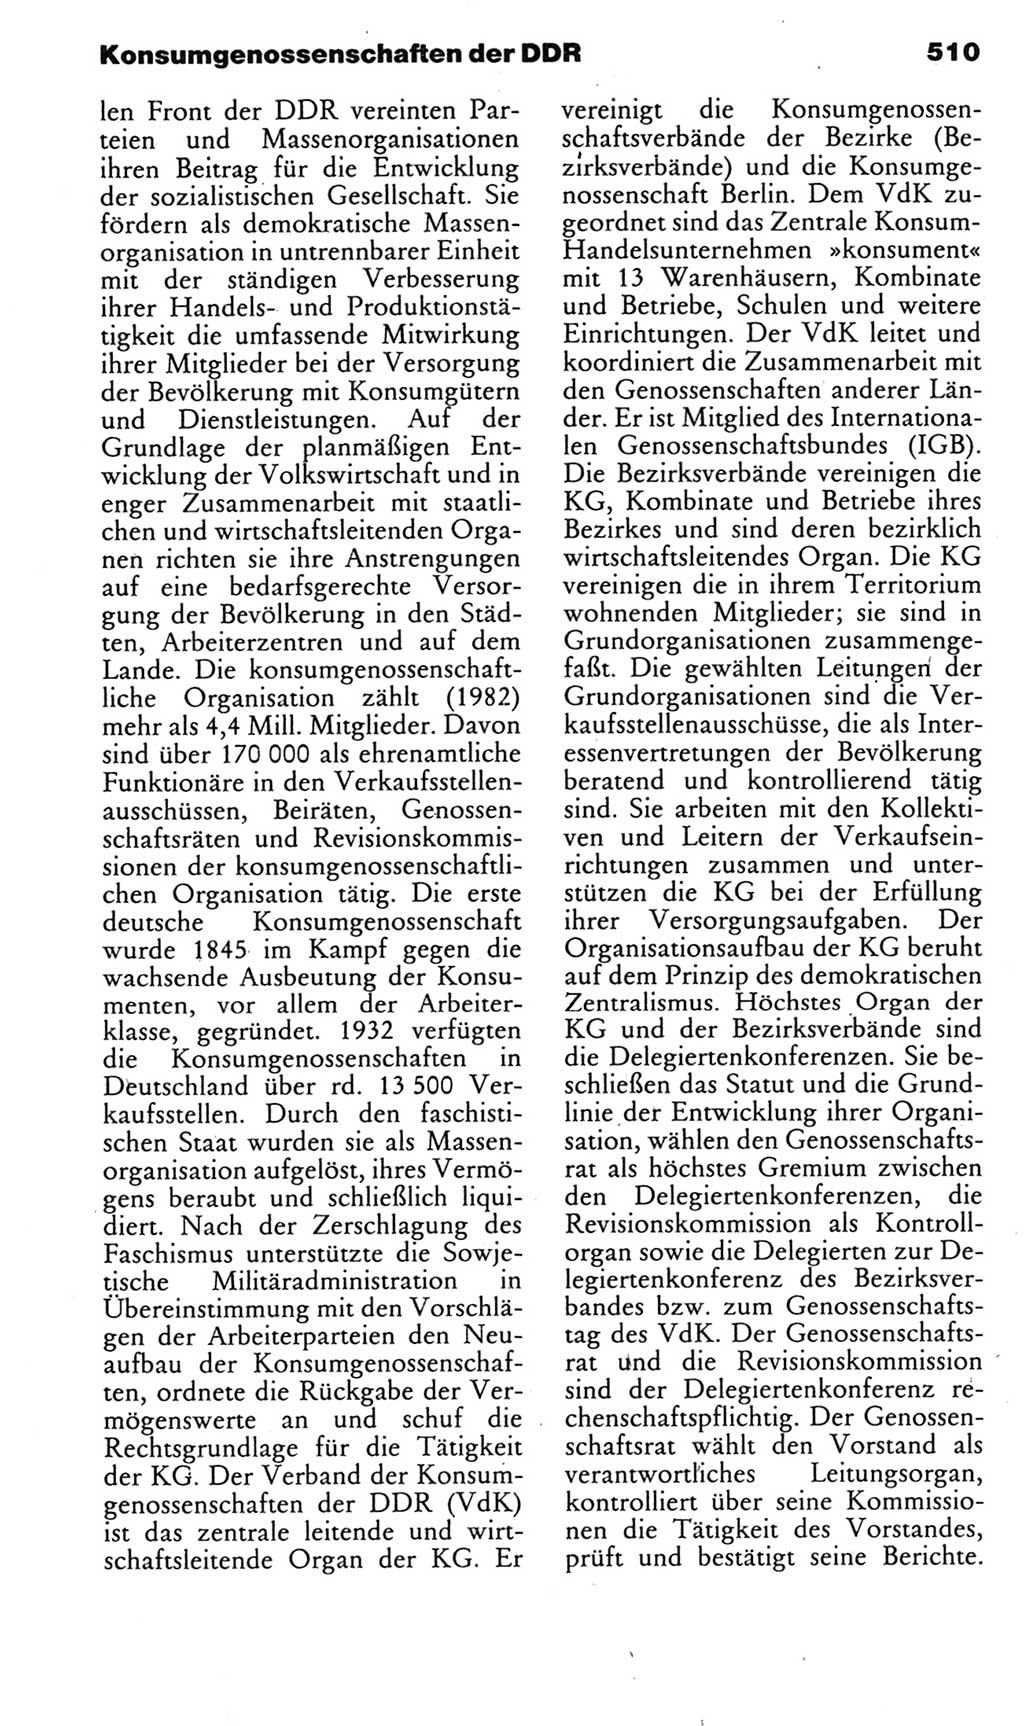 Kleines politisches Wörterbuch [Deutsche Demokratische Republik (DDR)] 1985, Seite 510 (Kl. pol. Wb. DDR 1985, S. 510)